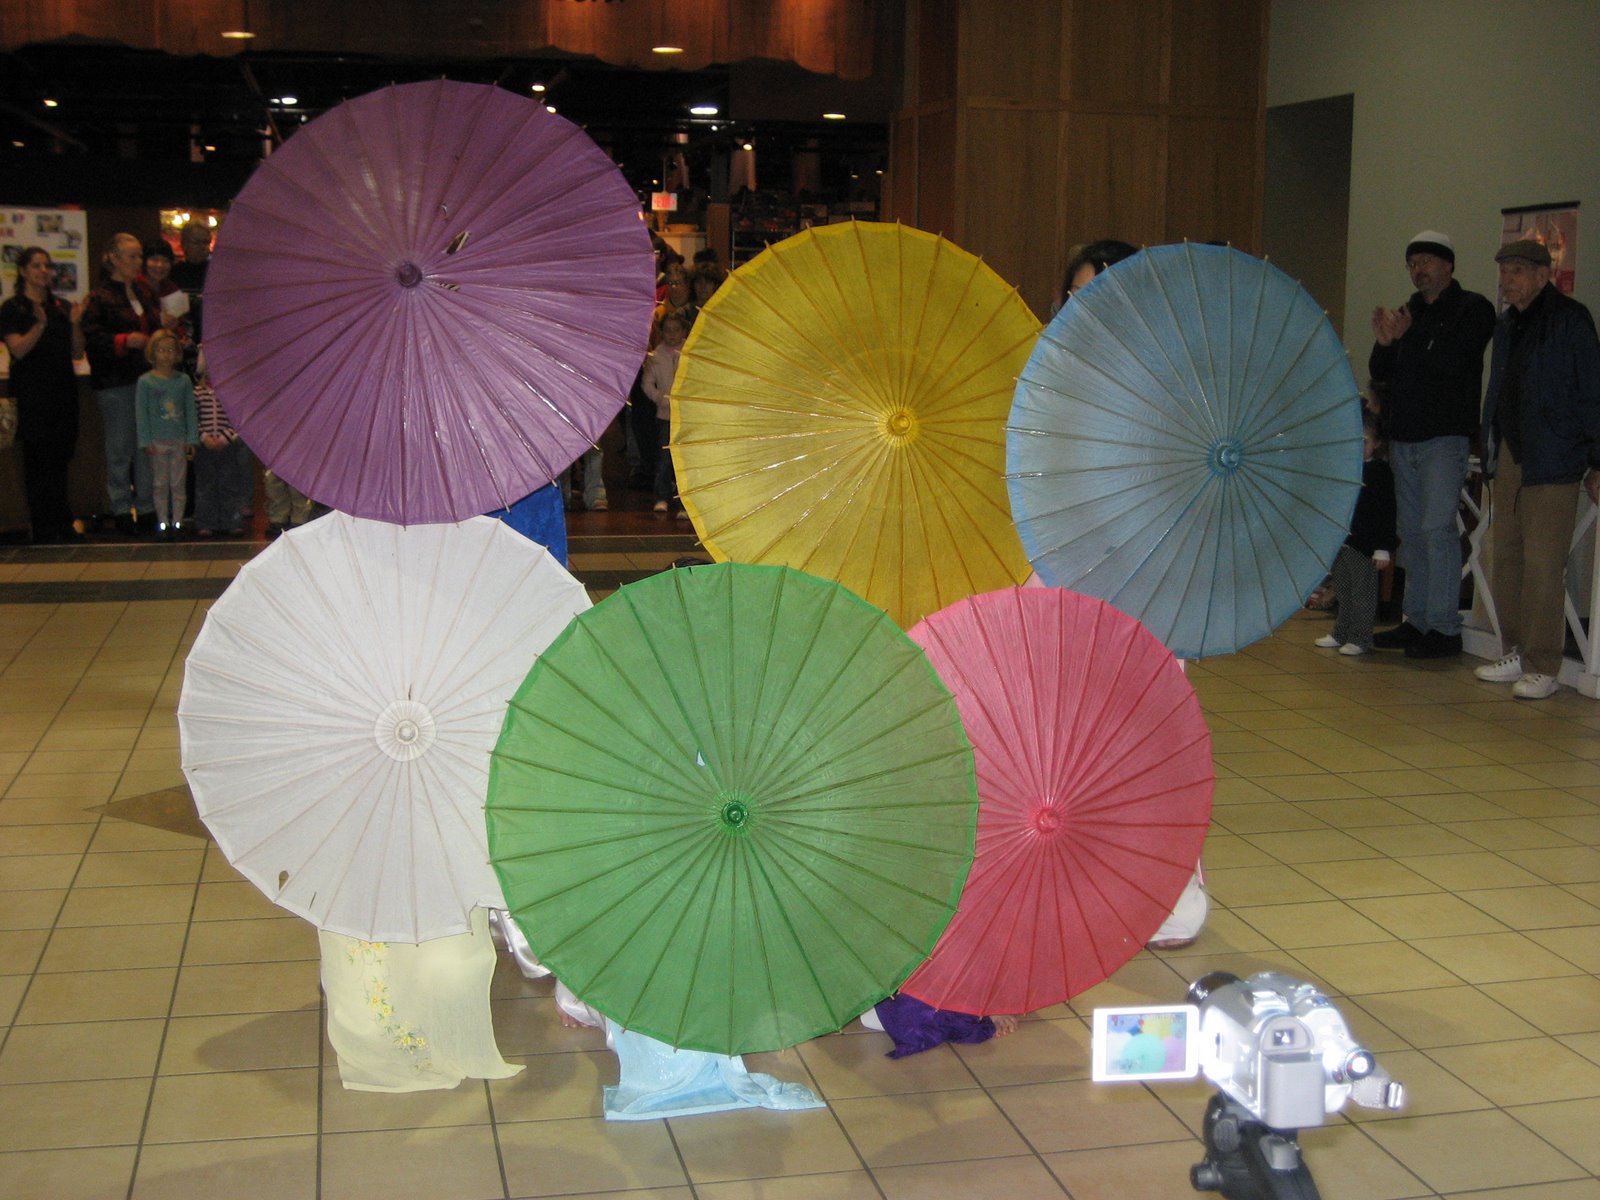 [Open_Umbrellas.JPG]